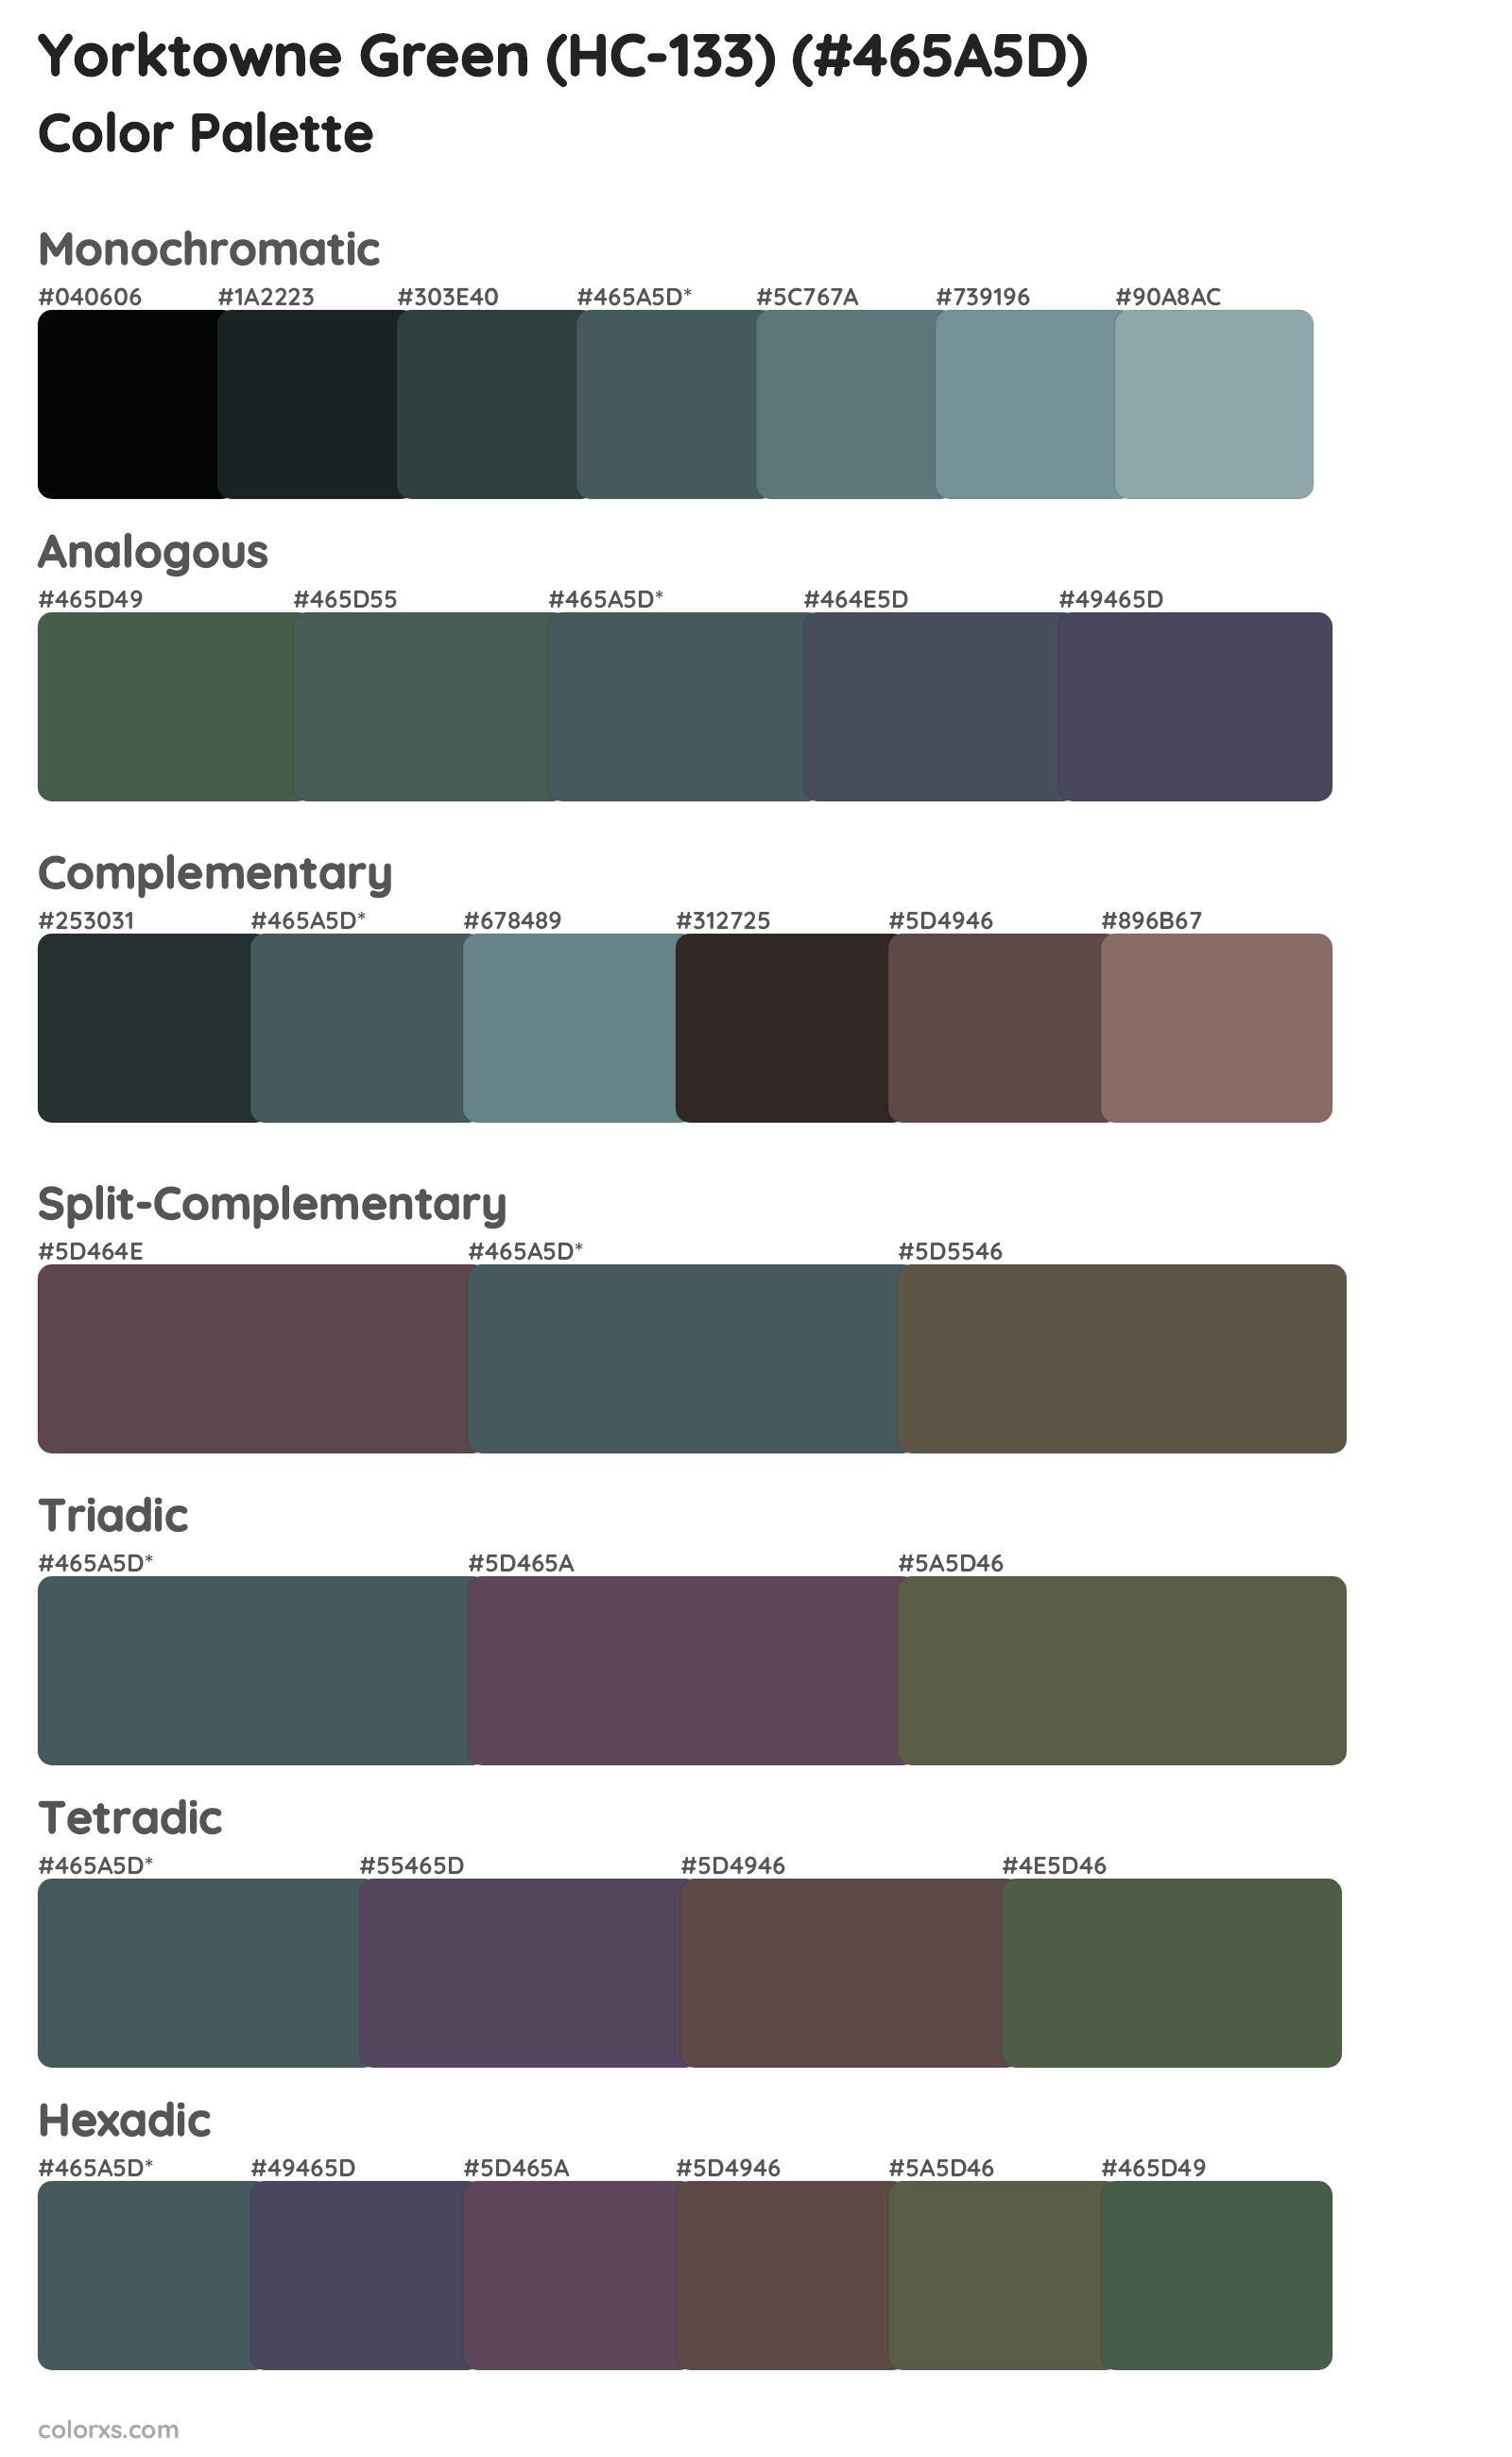 Yorktowne Green (HC-133) Color Scheme Palettes